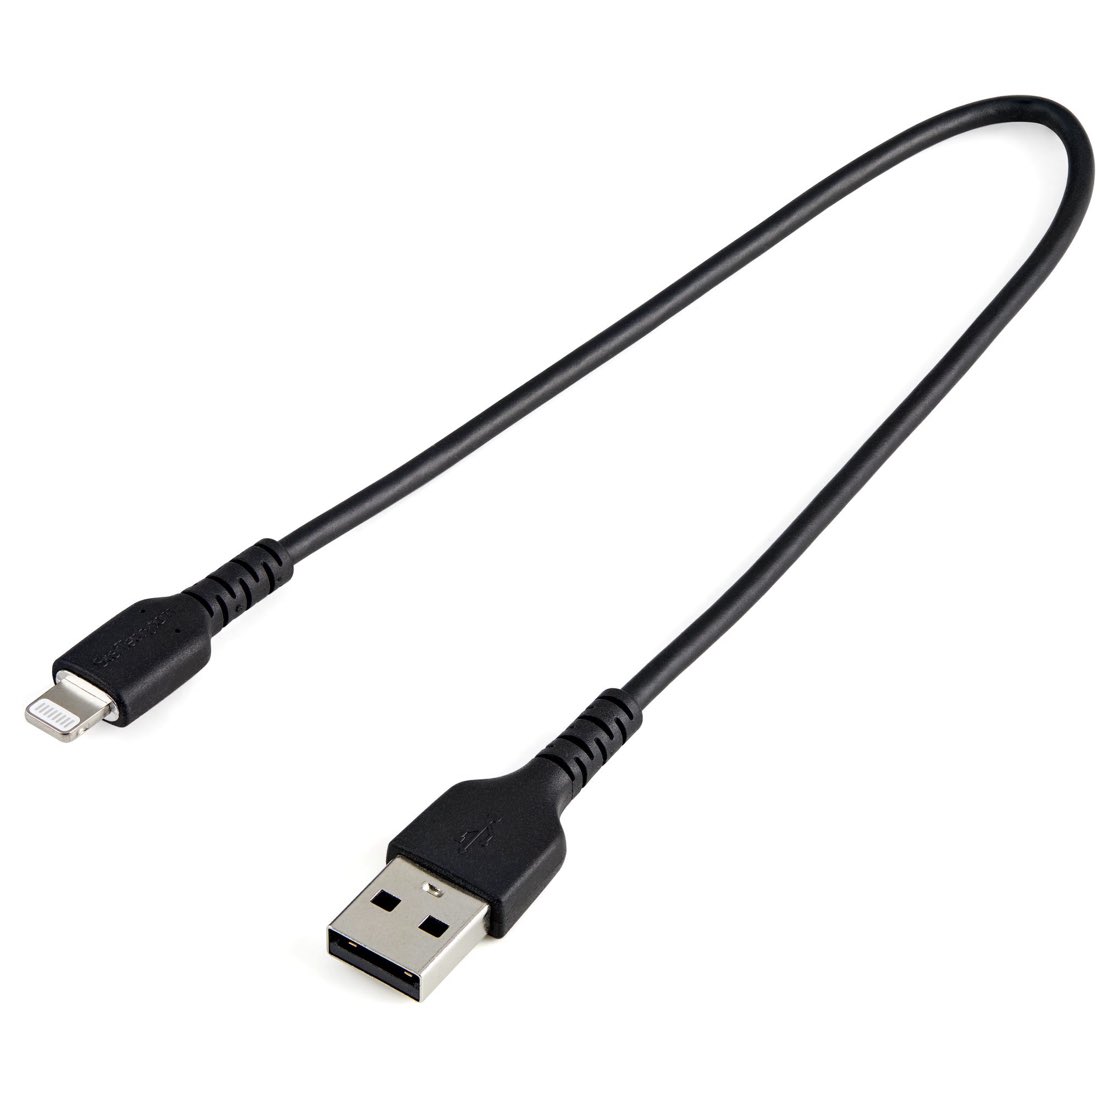 StarTech.com Cable Resistente USB-A a Lightning de 30 cm Negro - Cable de Sincronización y Carga USB Tipo A a Lightning con Fibra de Aramida